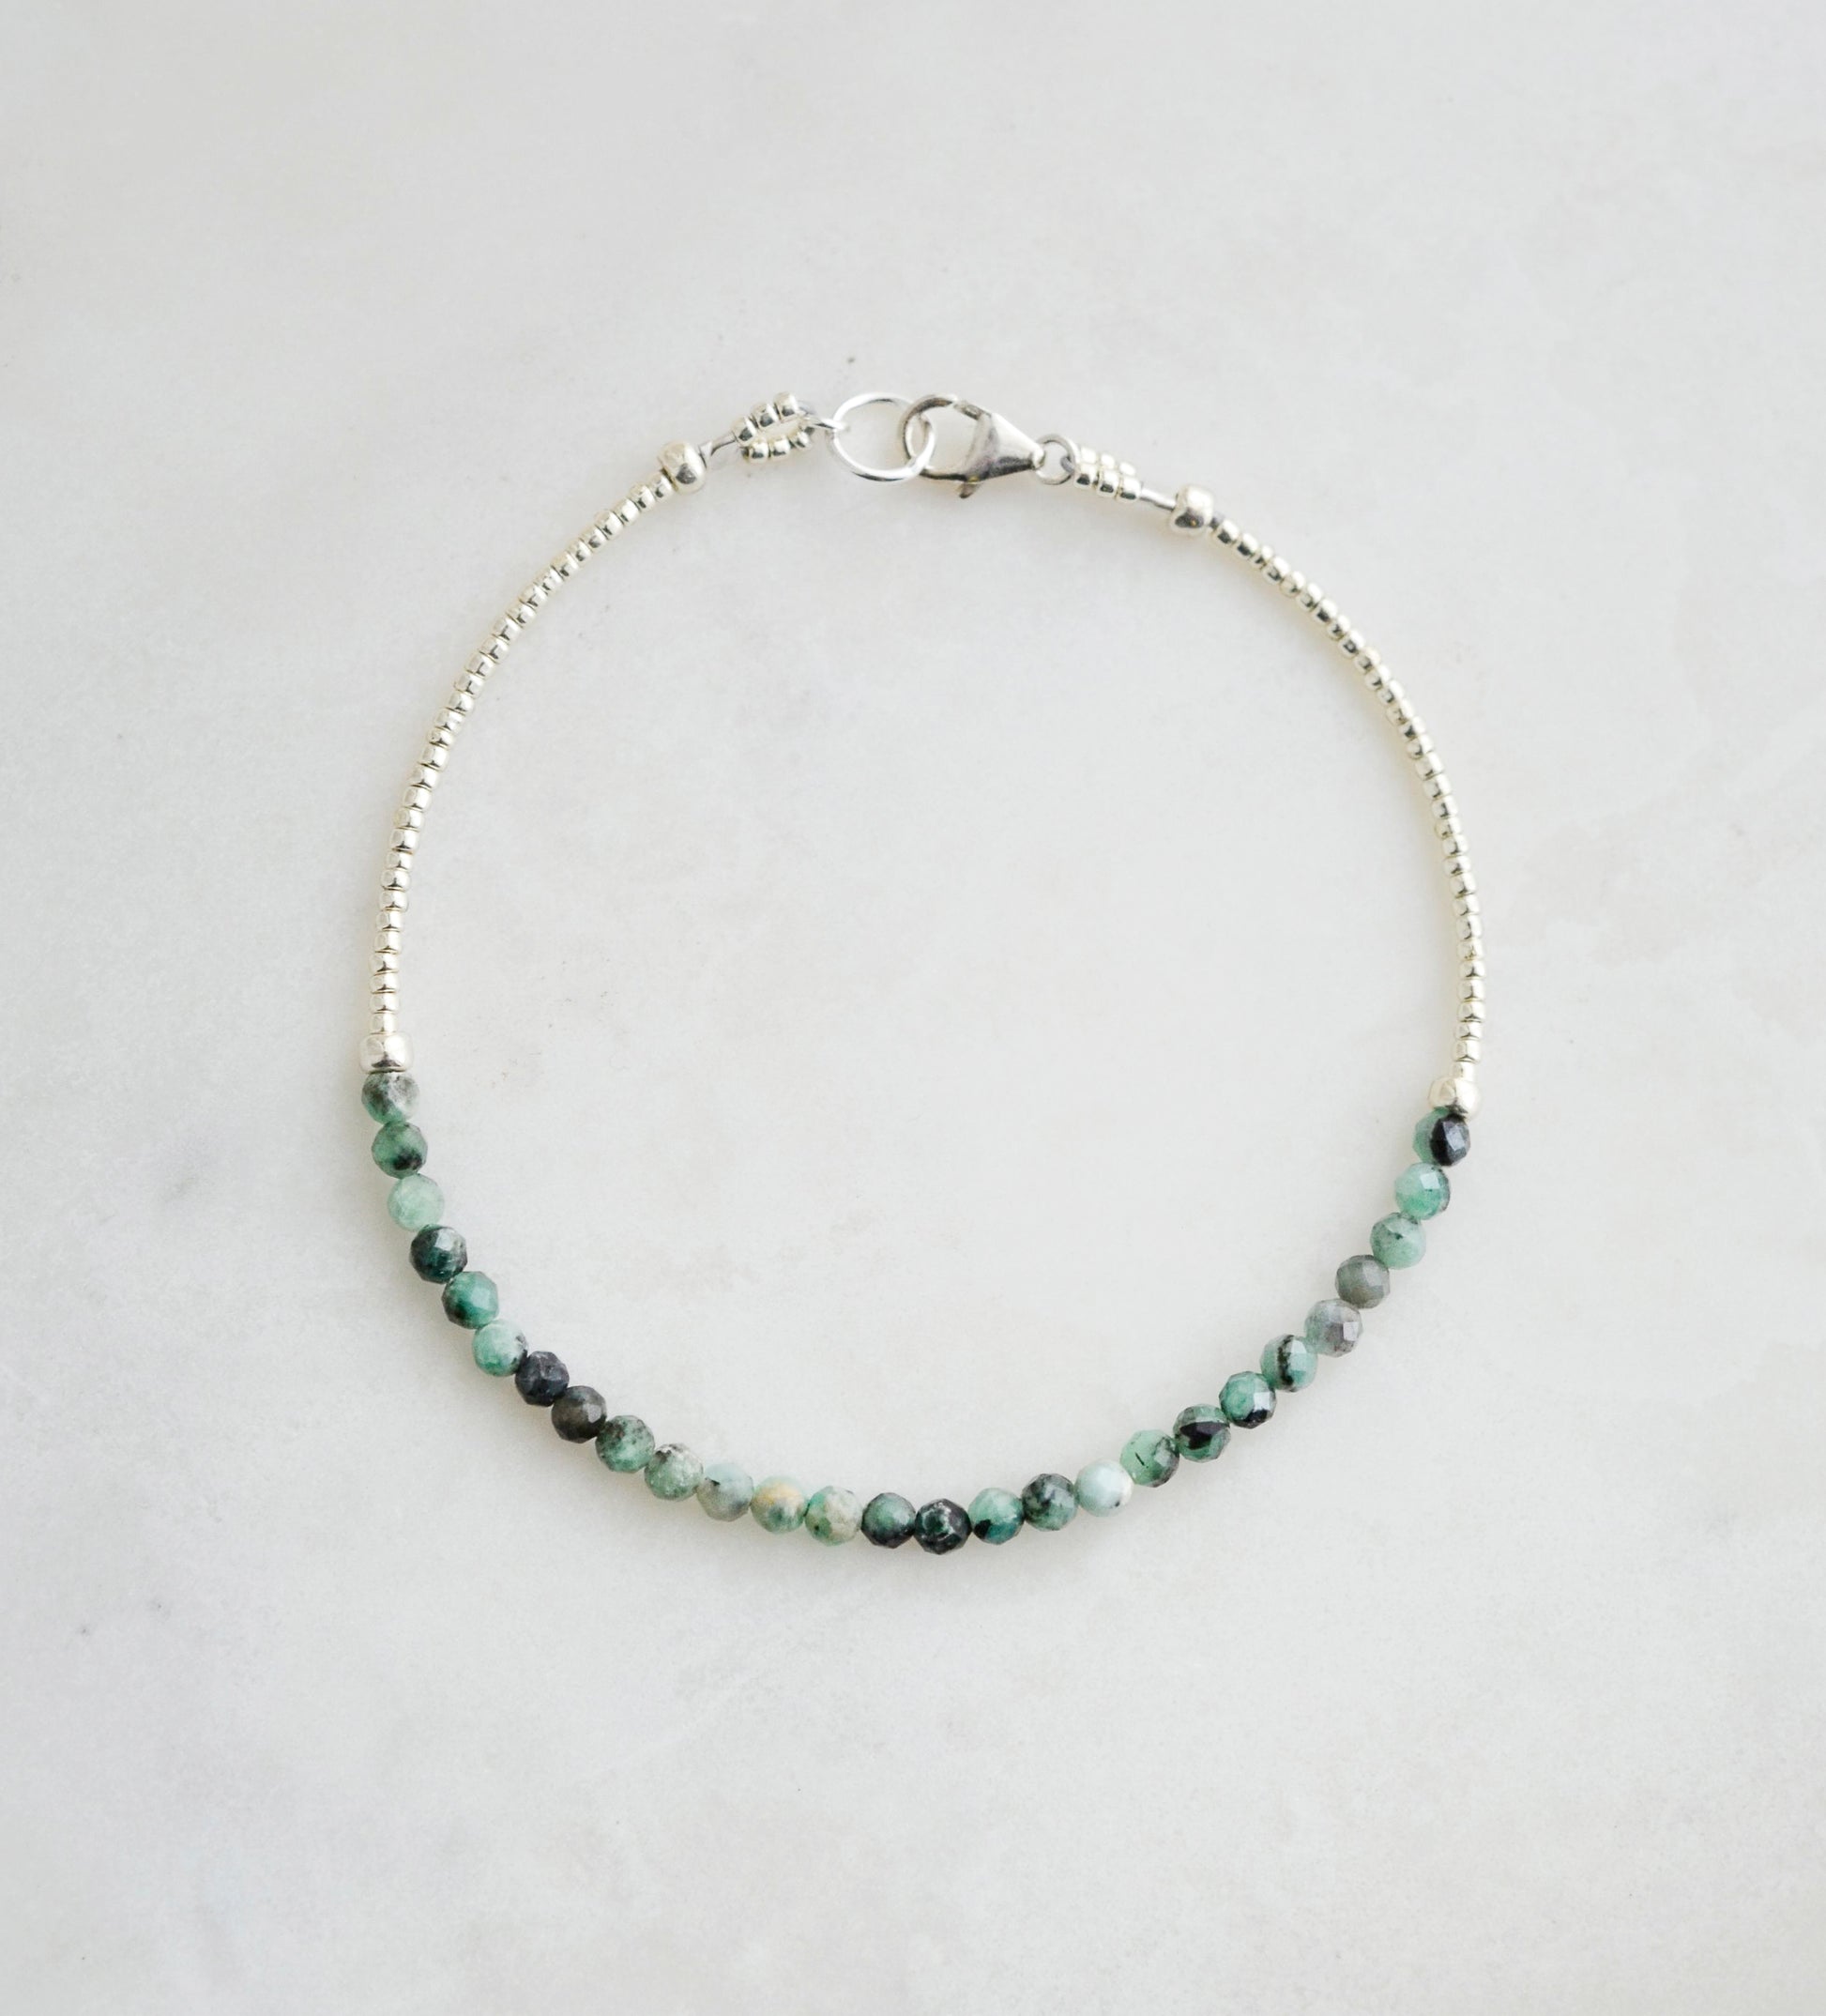 Beaded green Emerald bracelet in sterling silver.